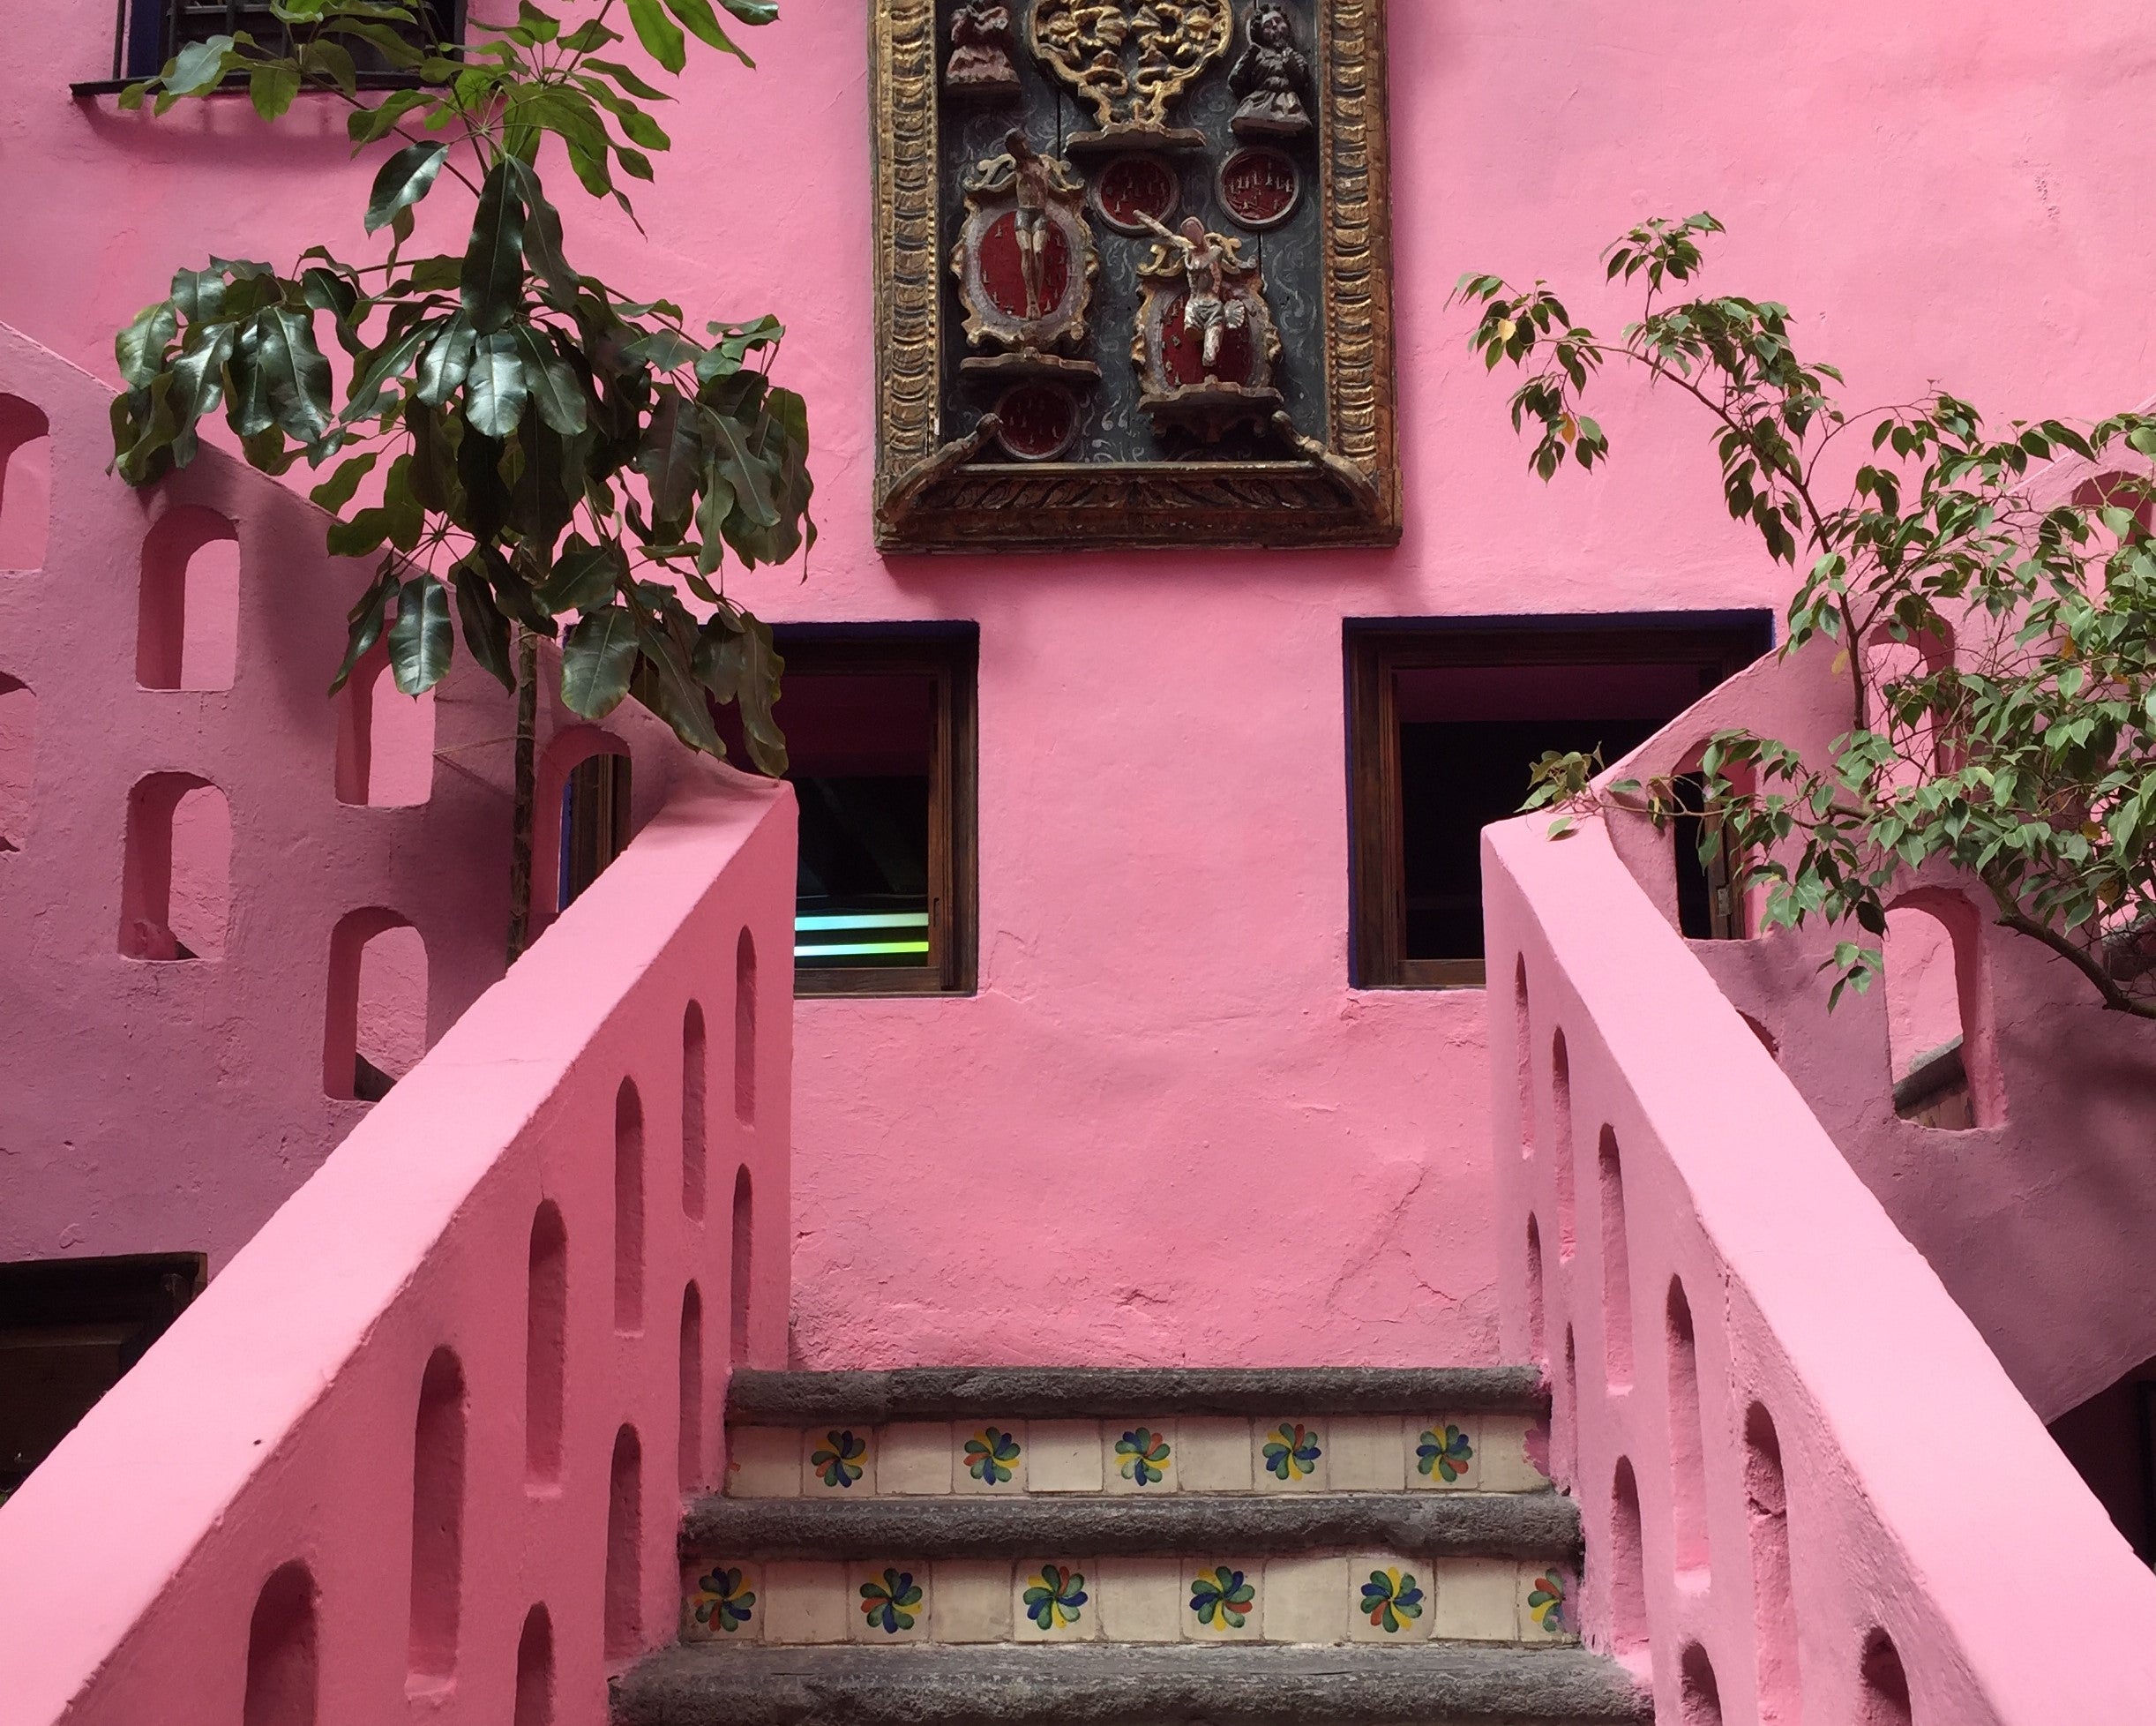 Méson Sacristia de la Compañia has striking pink interiors